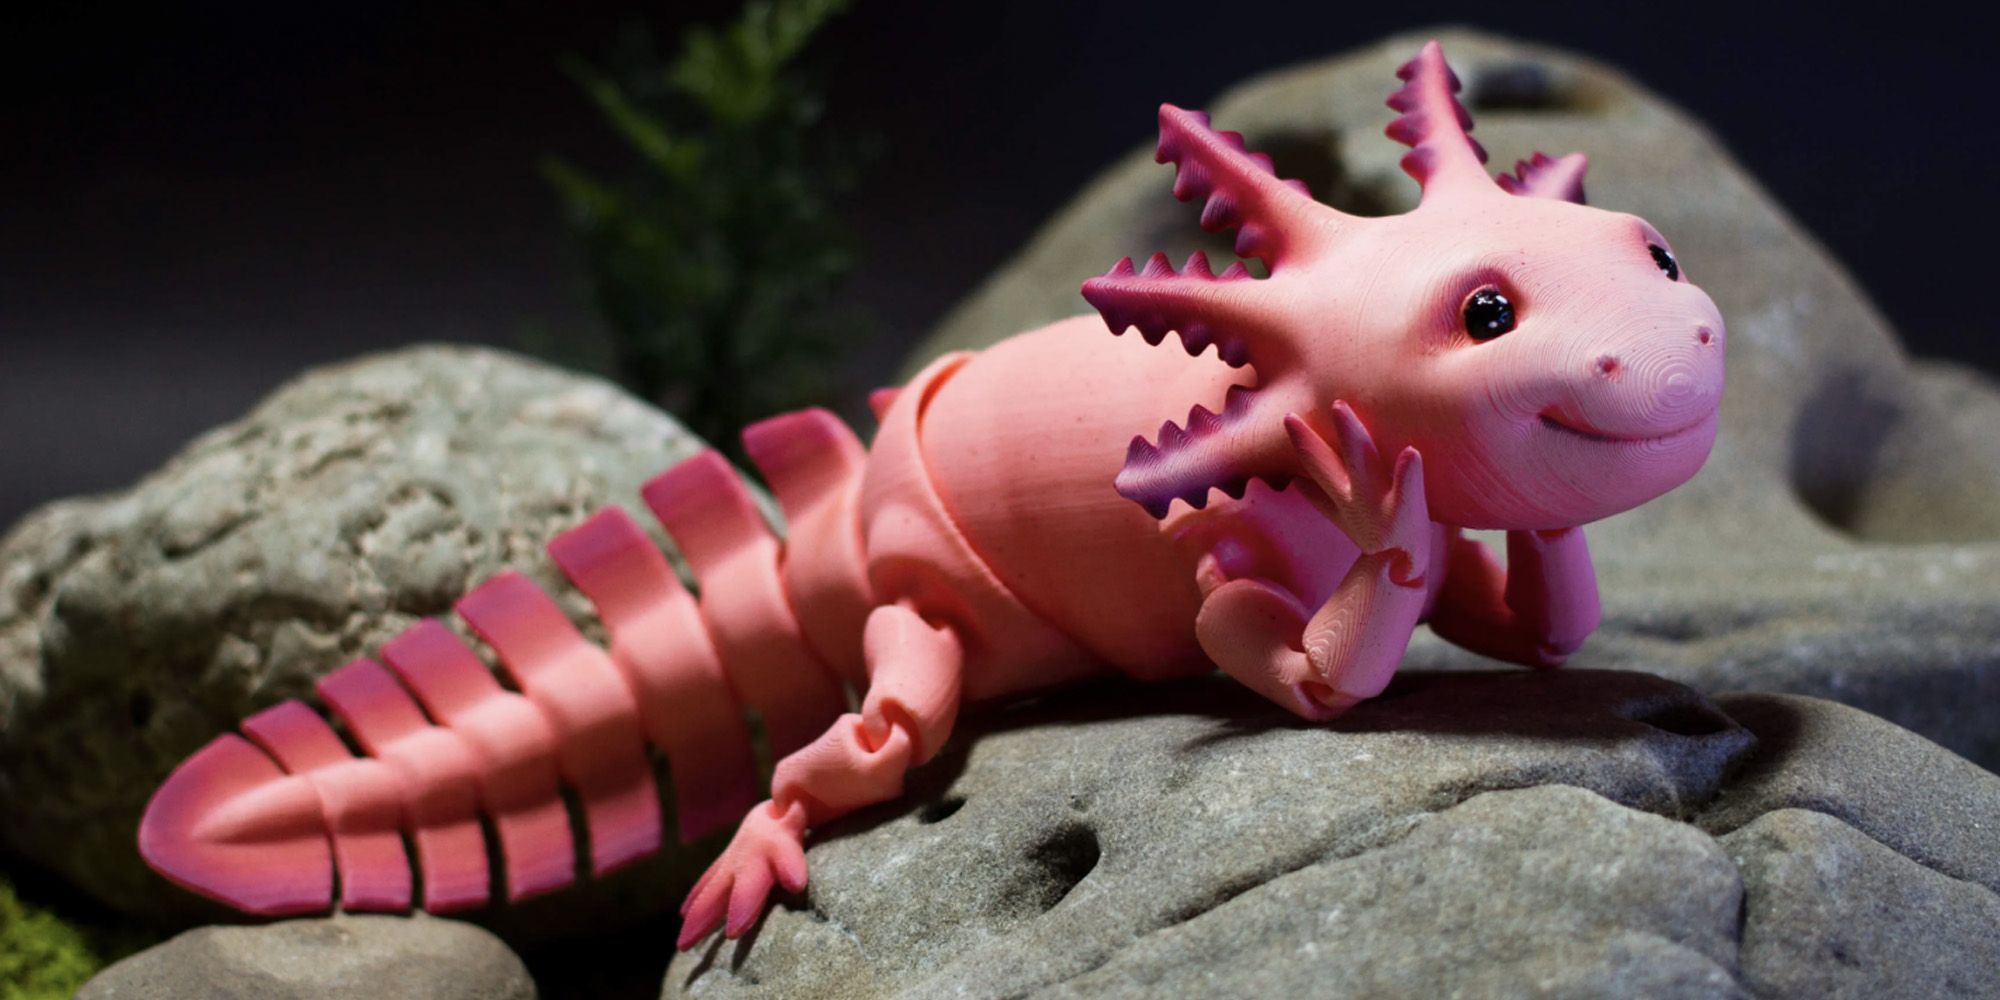 Fichier STL pour impression 3D, adorable axolotl articulé